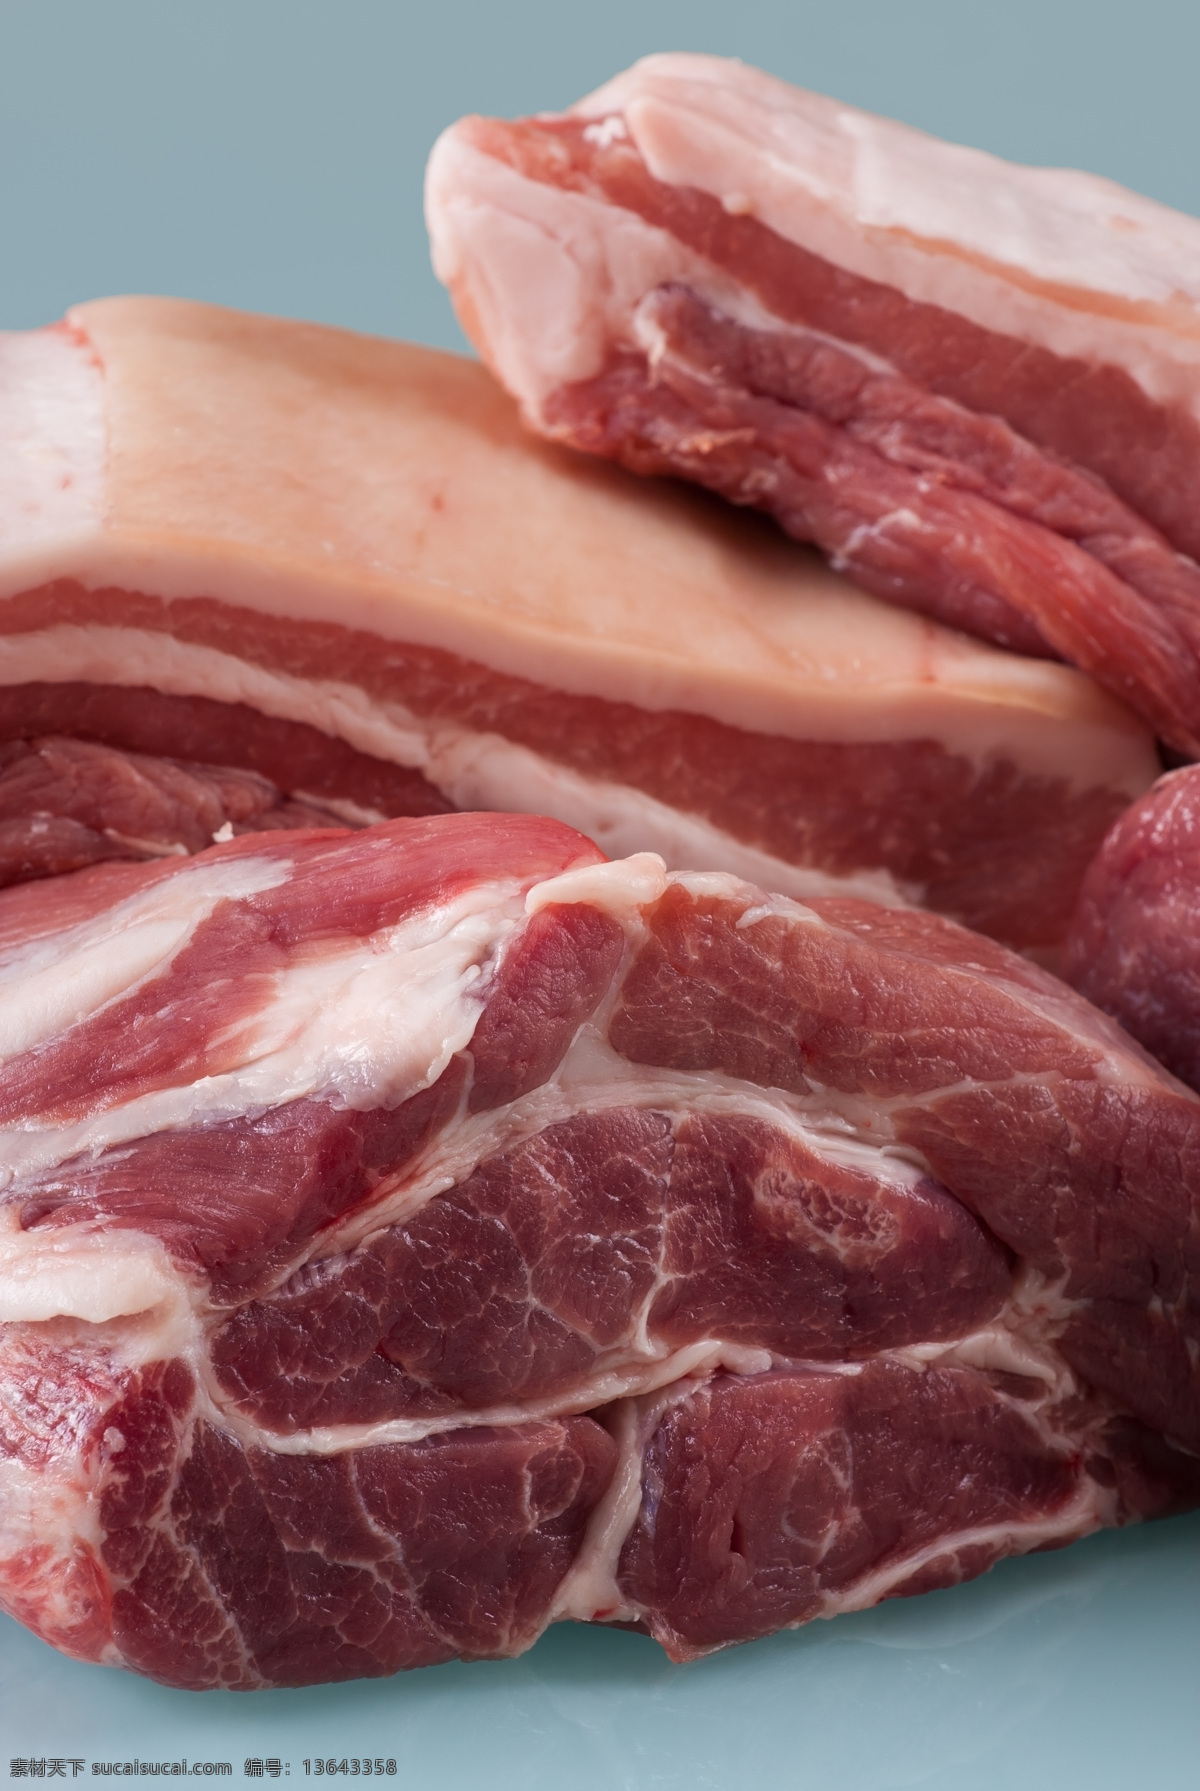 瘦肉 猪肉 生肉 生肉鲜肉 鲜肉 鲜肉生肉 肉类 牛肉 新鲜 食物原料 食材原料 餐饮美食